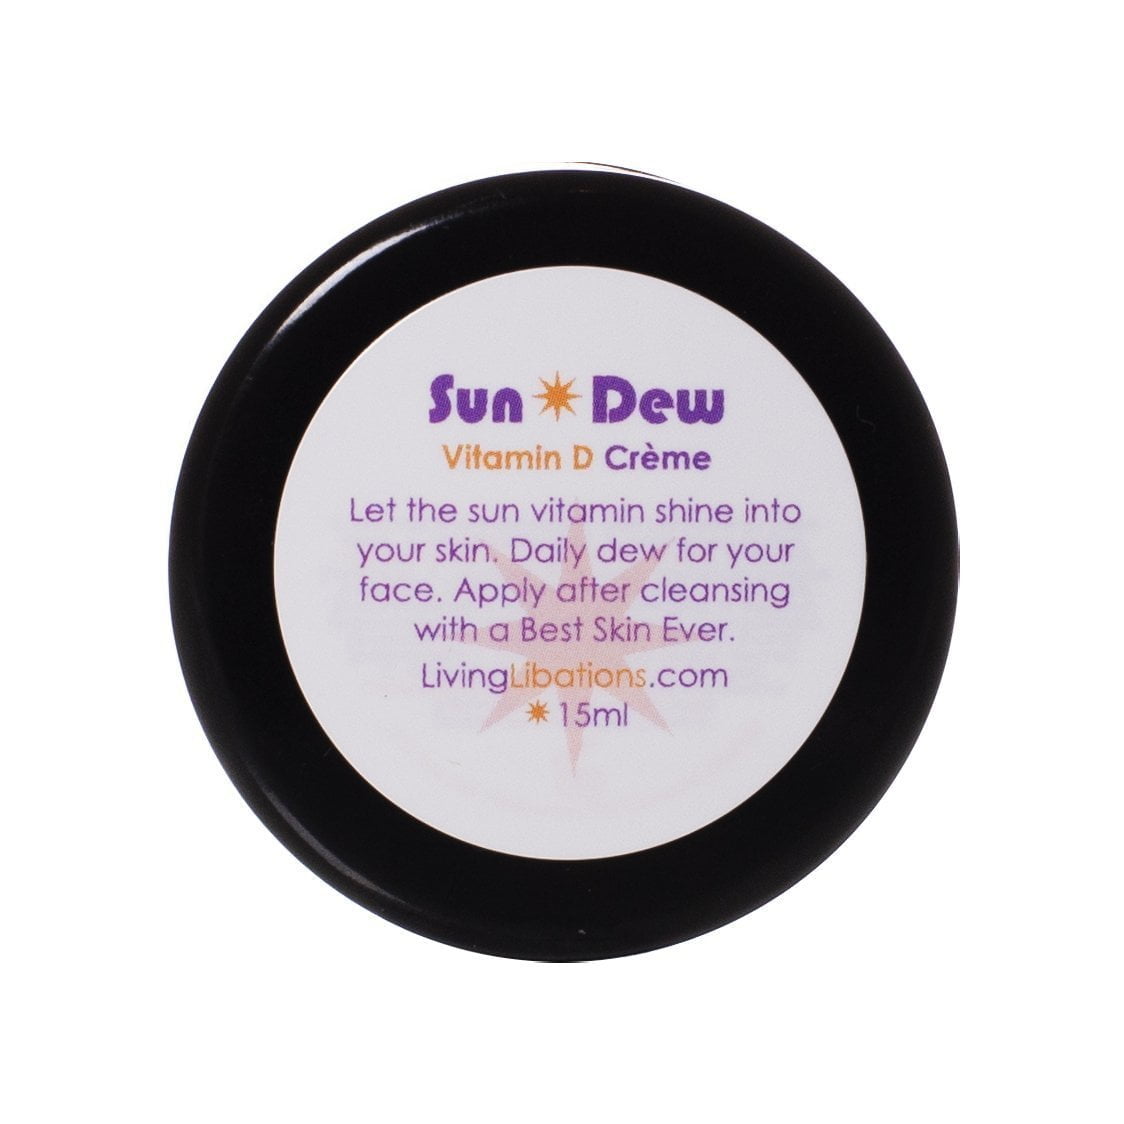 Sun Dew Vitamin D Crème - Living Libations